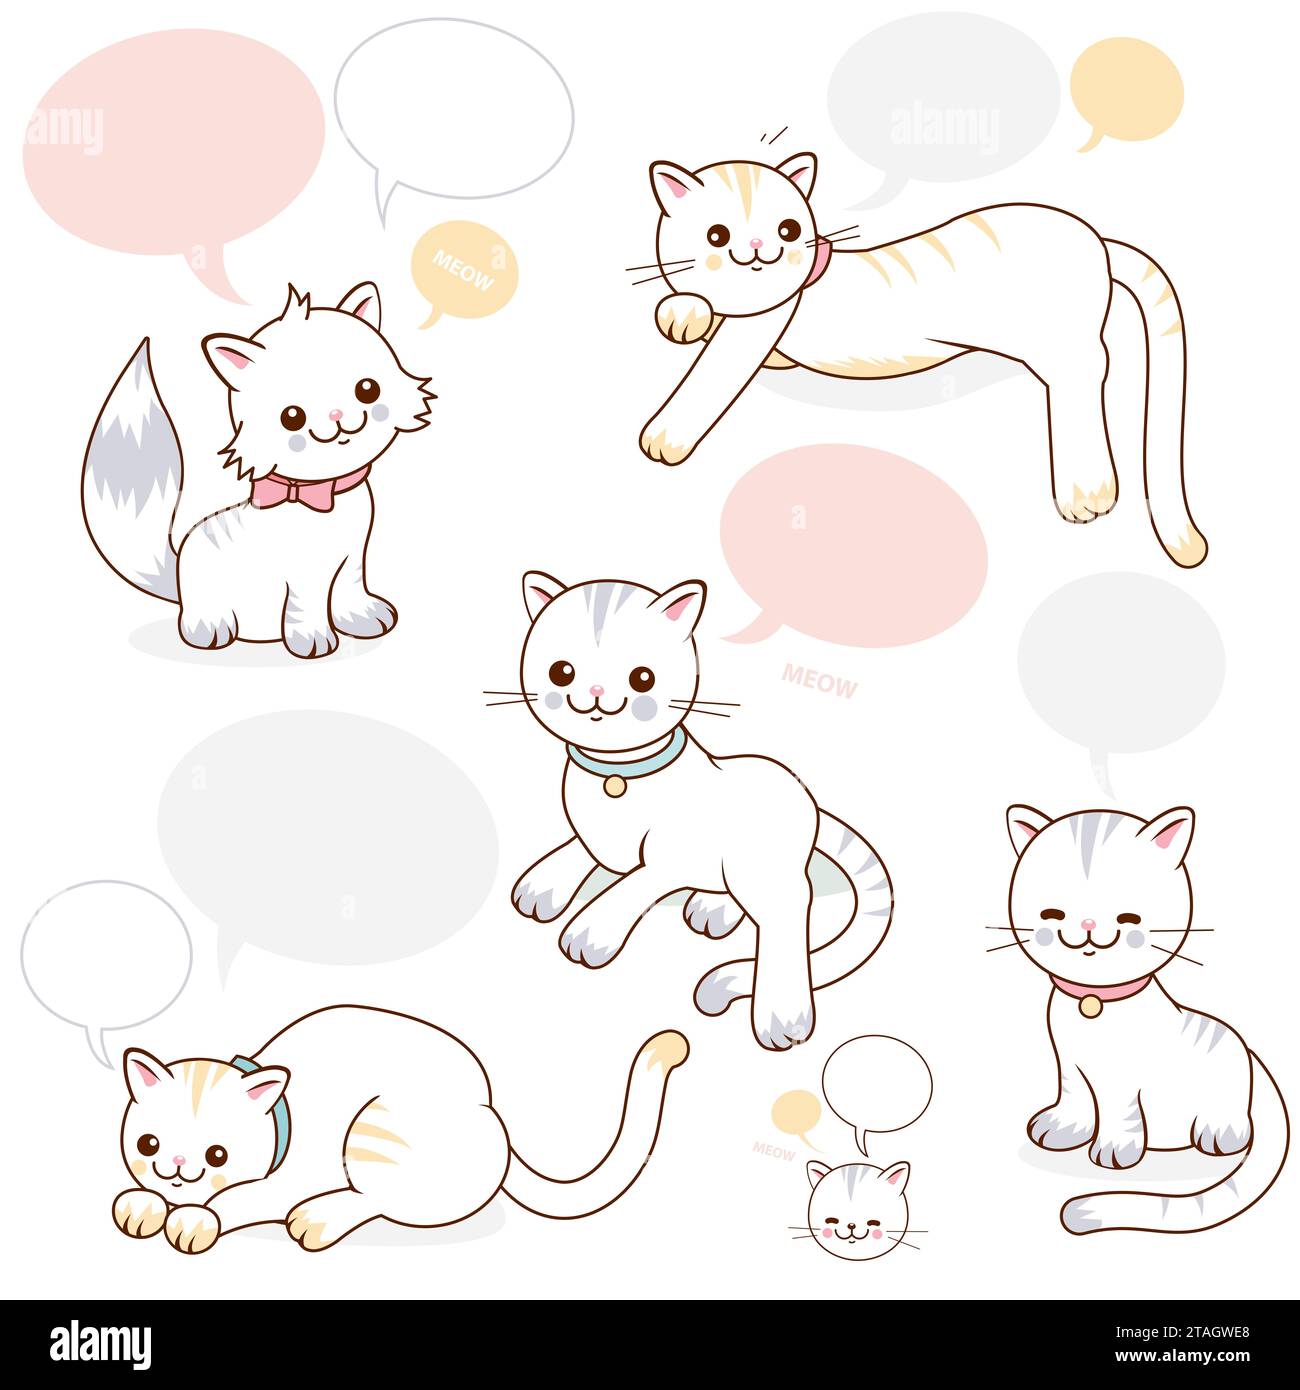 Gatti dei cartoni animati con bolle vocali. Gattini carini che parlano o mescolare. Bollature vocali vuote per aggiungere testo. Foto Stock